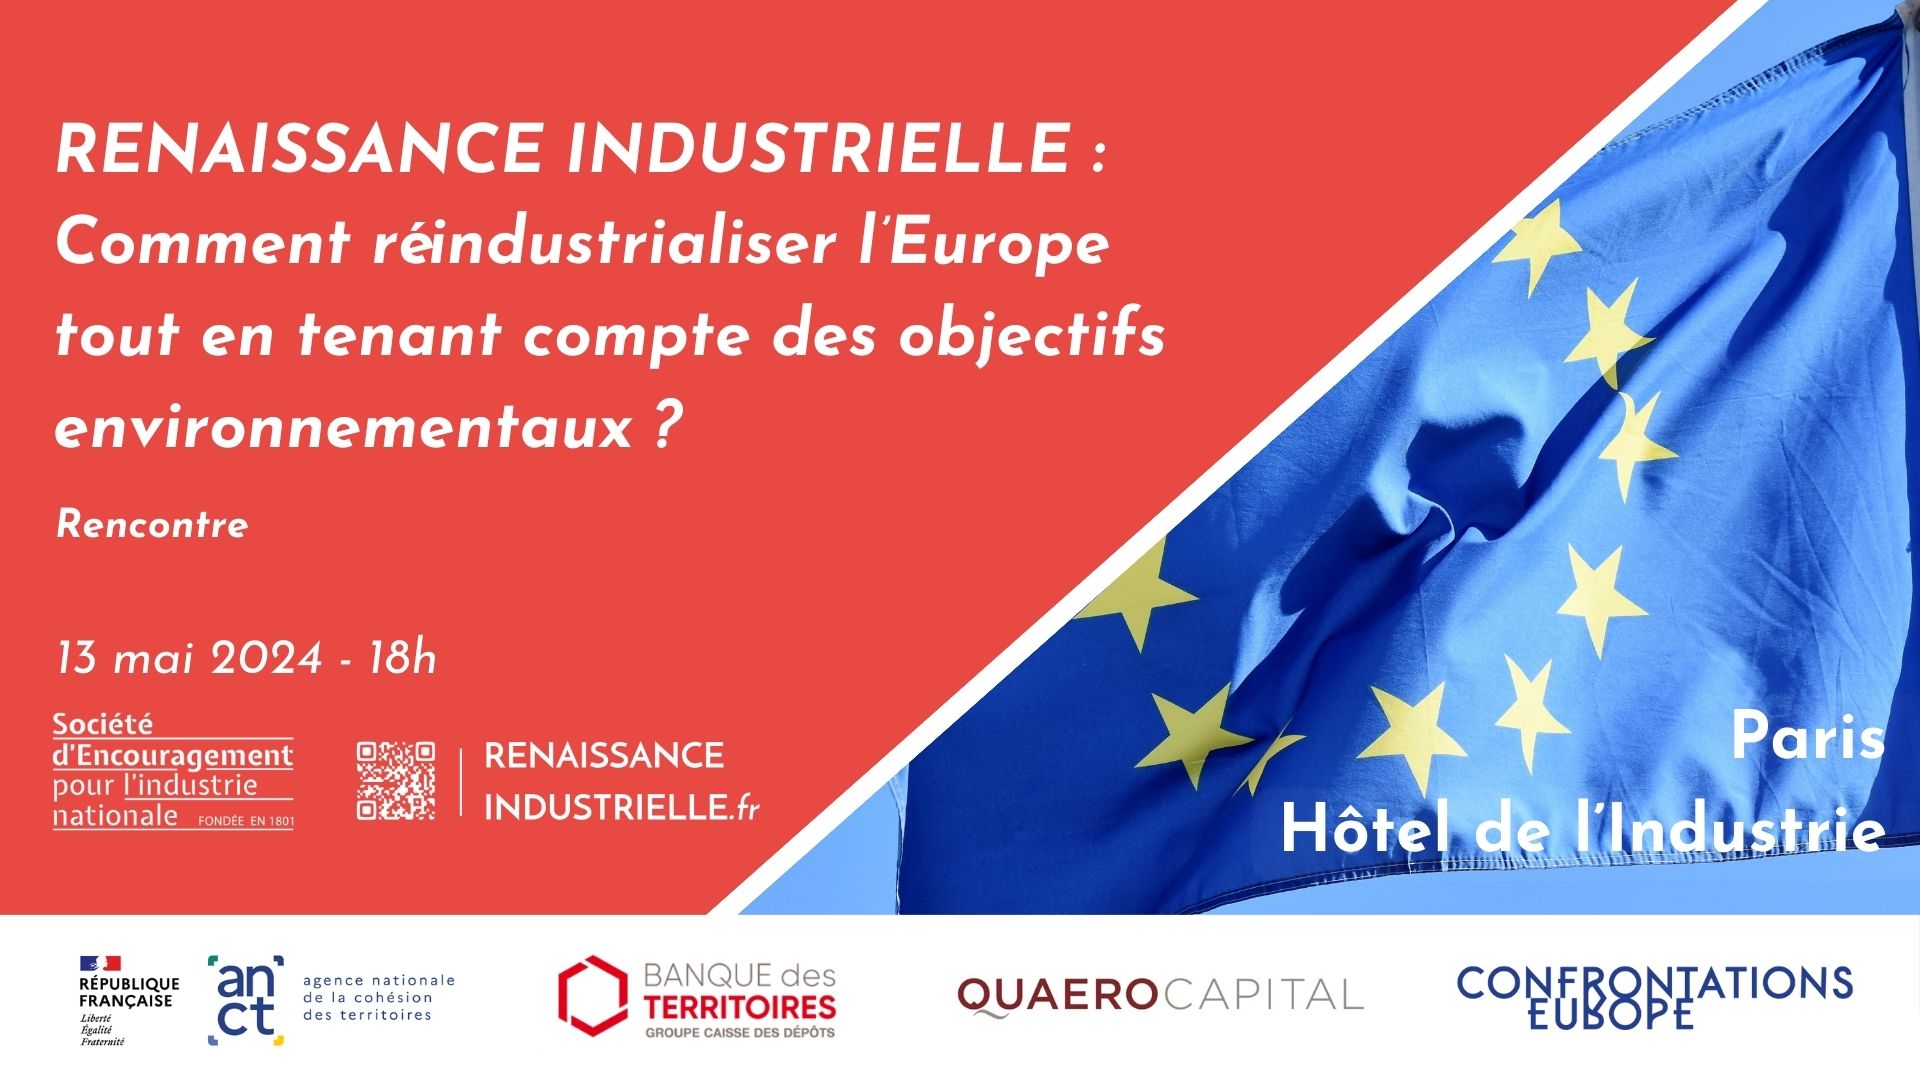 Europe - Comment réindustrialiser durablement ? 13/05/2024... Le 13 mai 2024